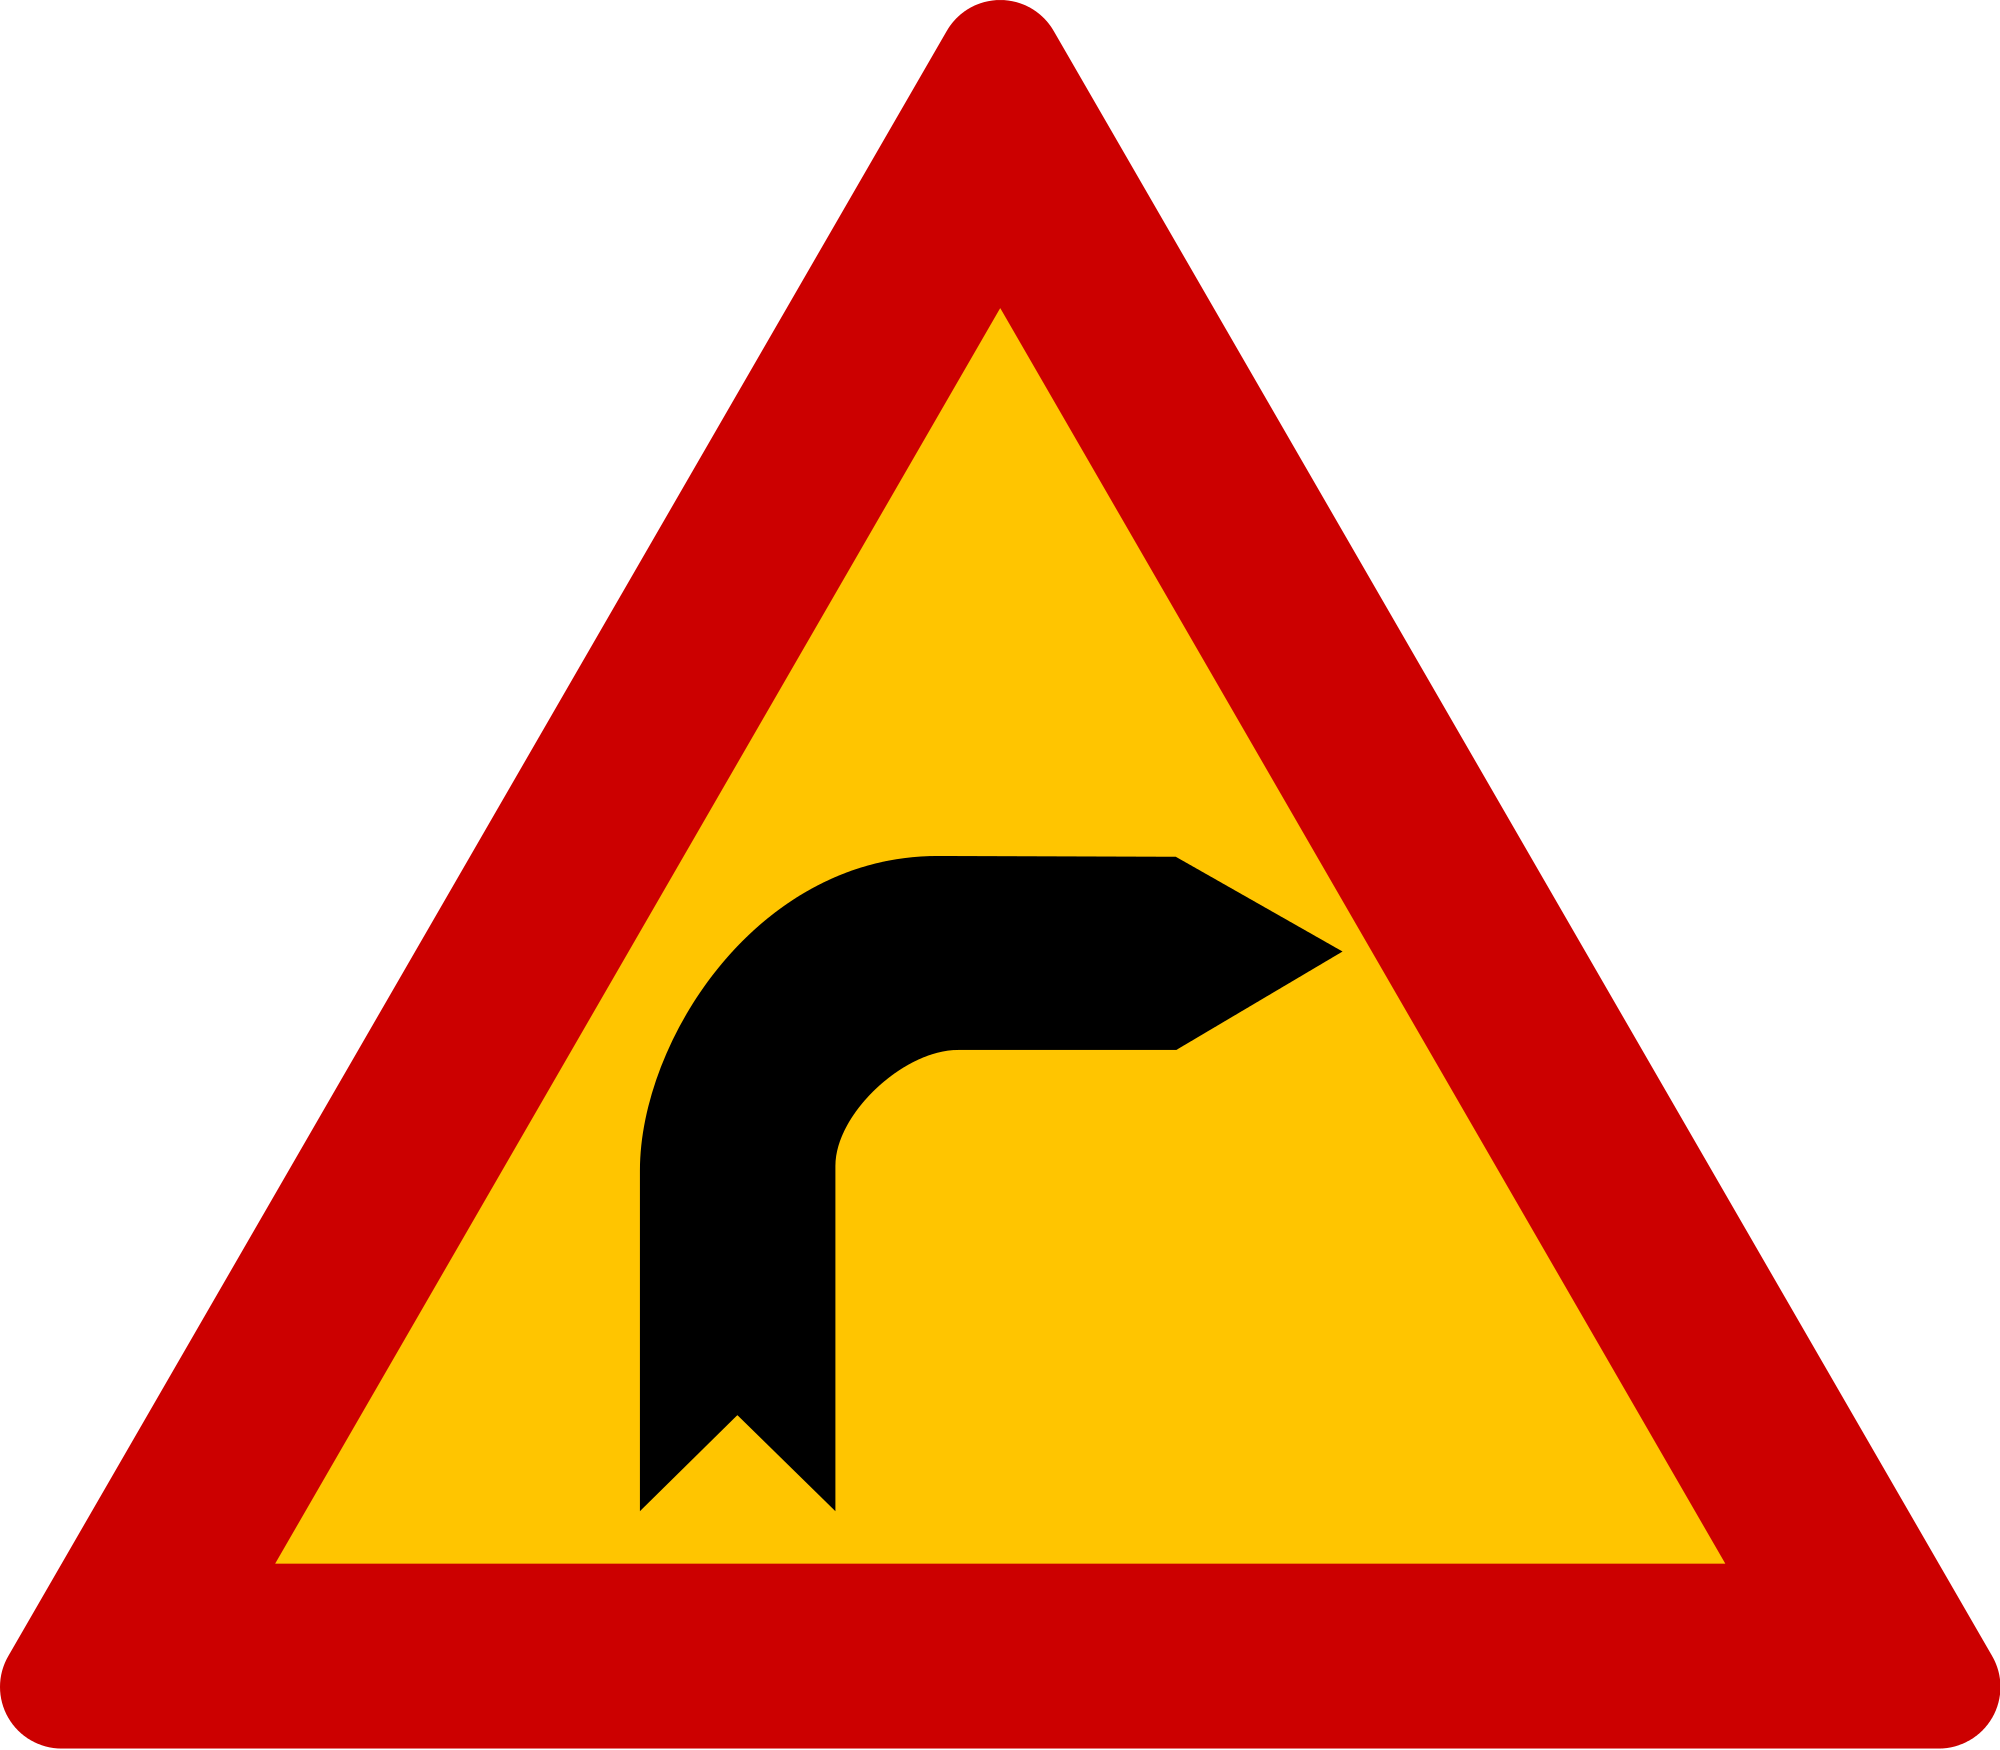 Open - Elderly Road Sign (2000x1750)